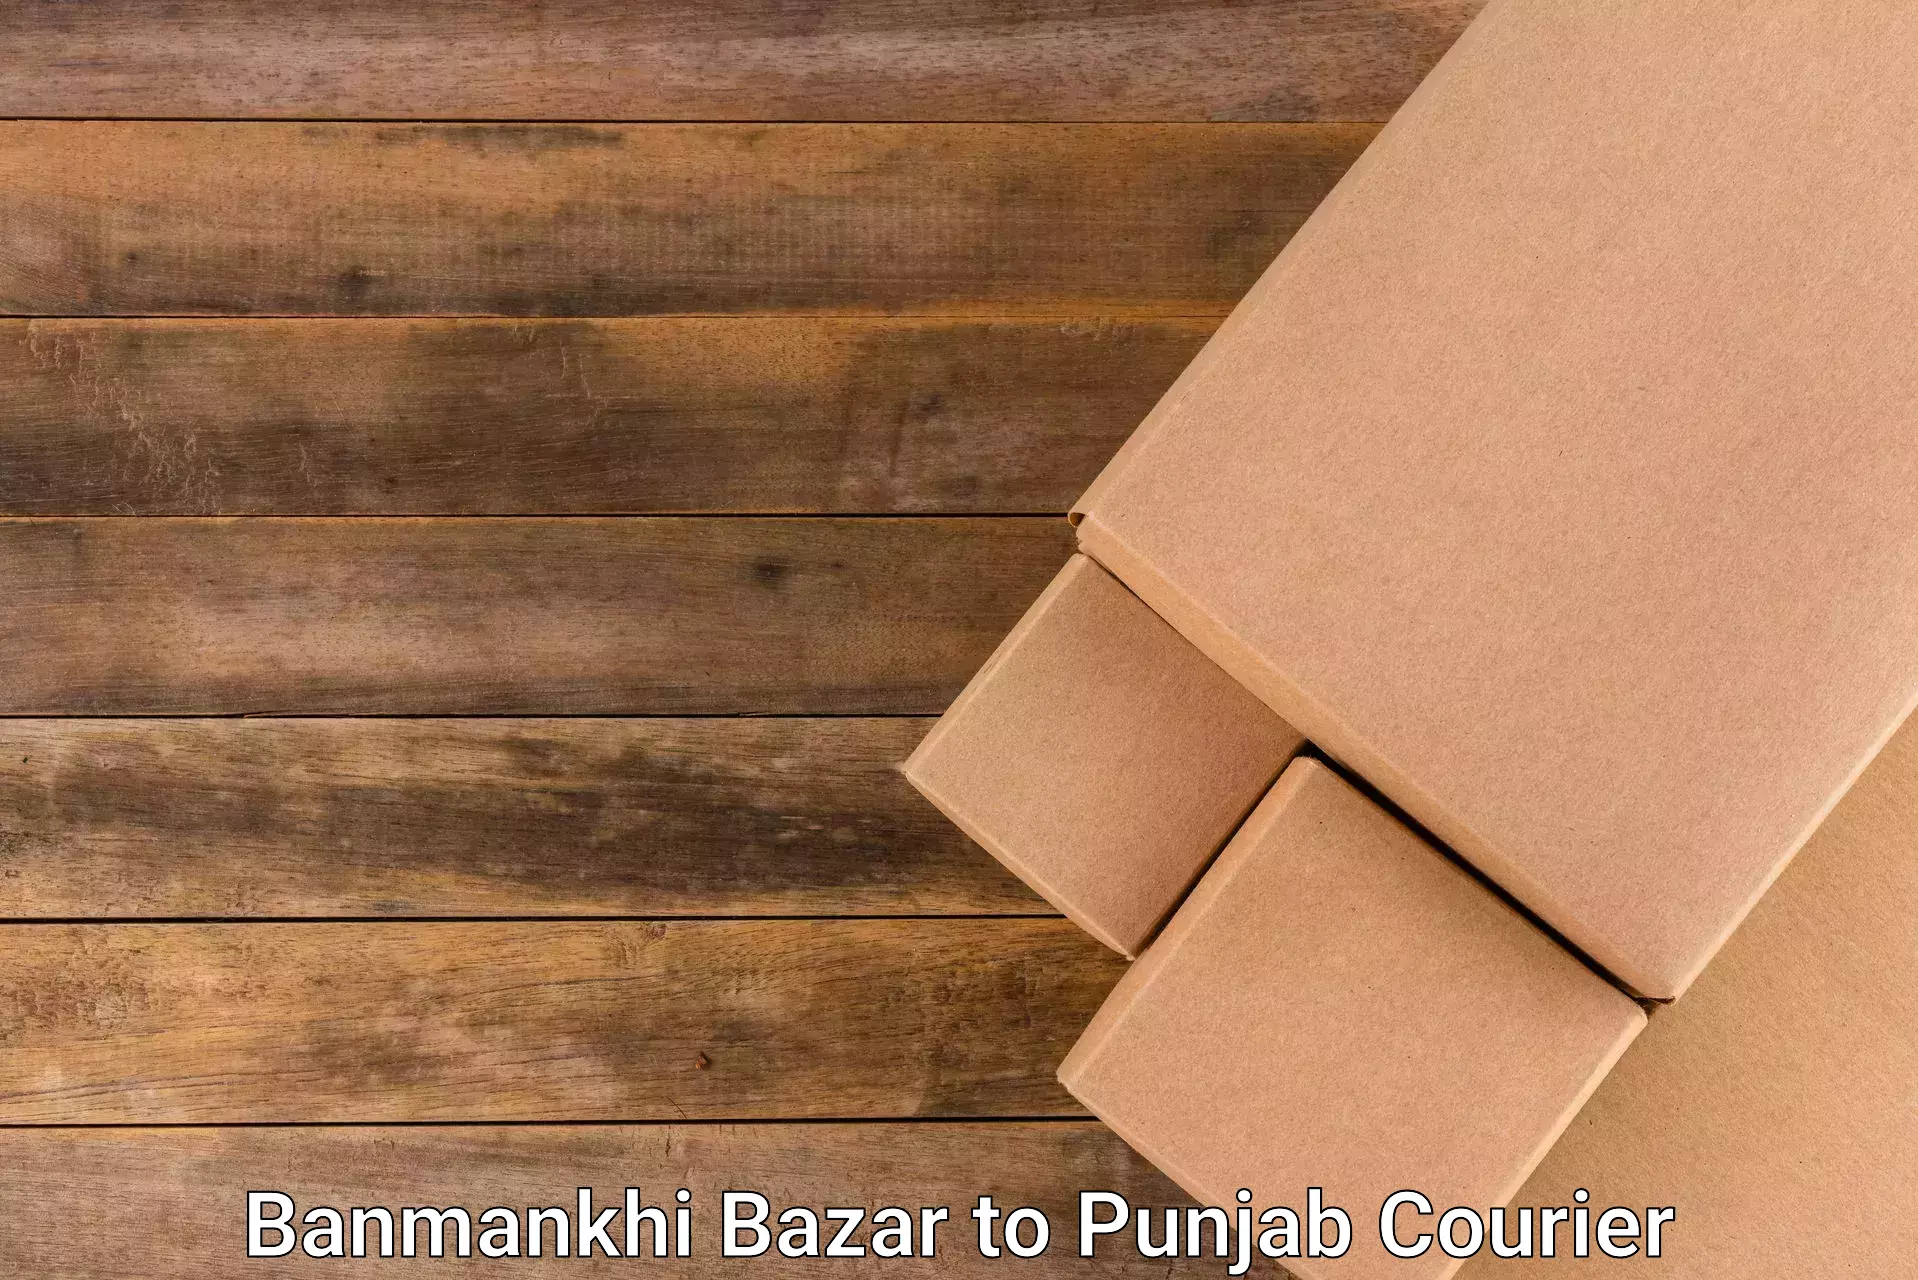 High-priority parcel service Banmankhi Bazar to Ajnala